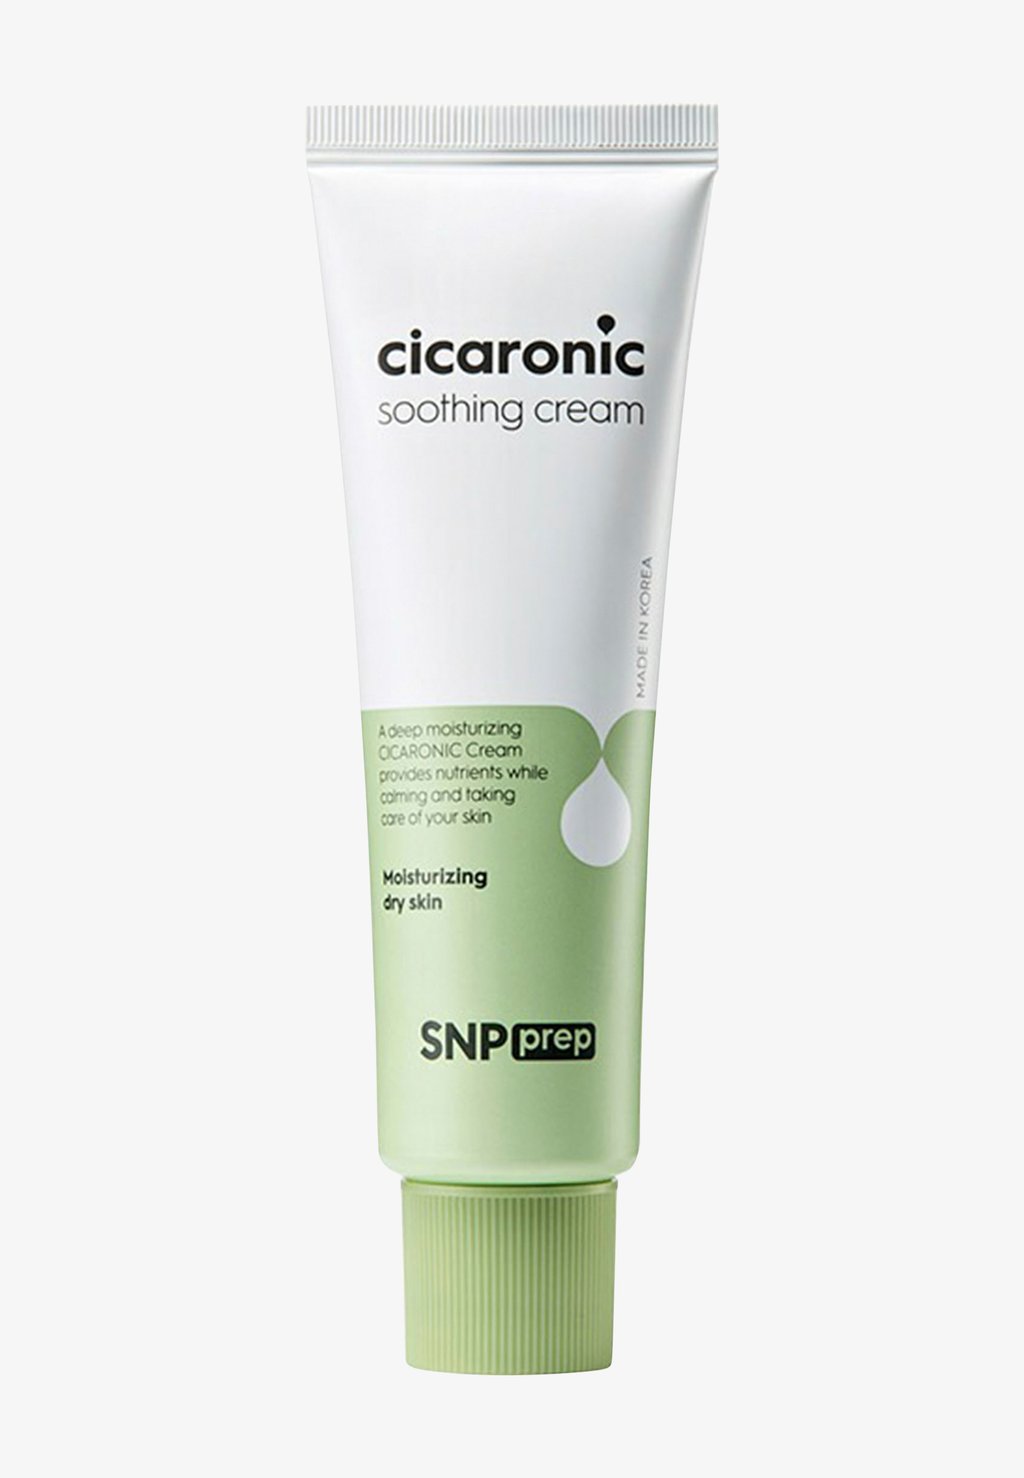 Крем для лица CICARONIC SOOTHING CREAM SNP snp prep cicaronic soothing cream